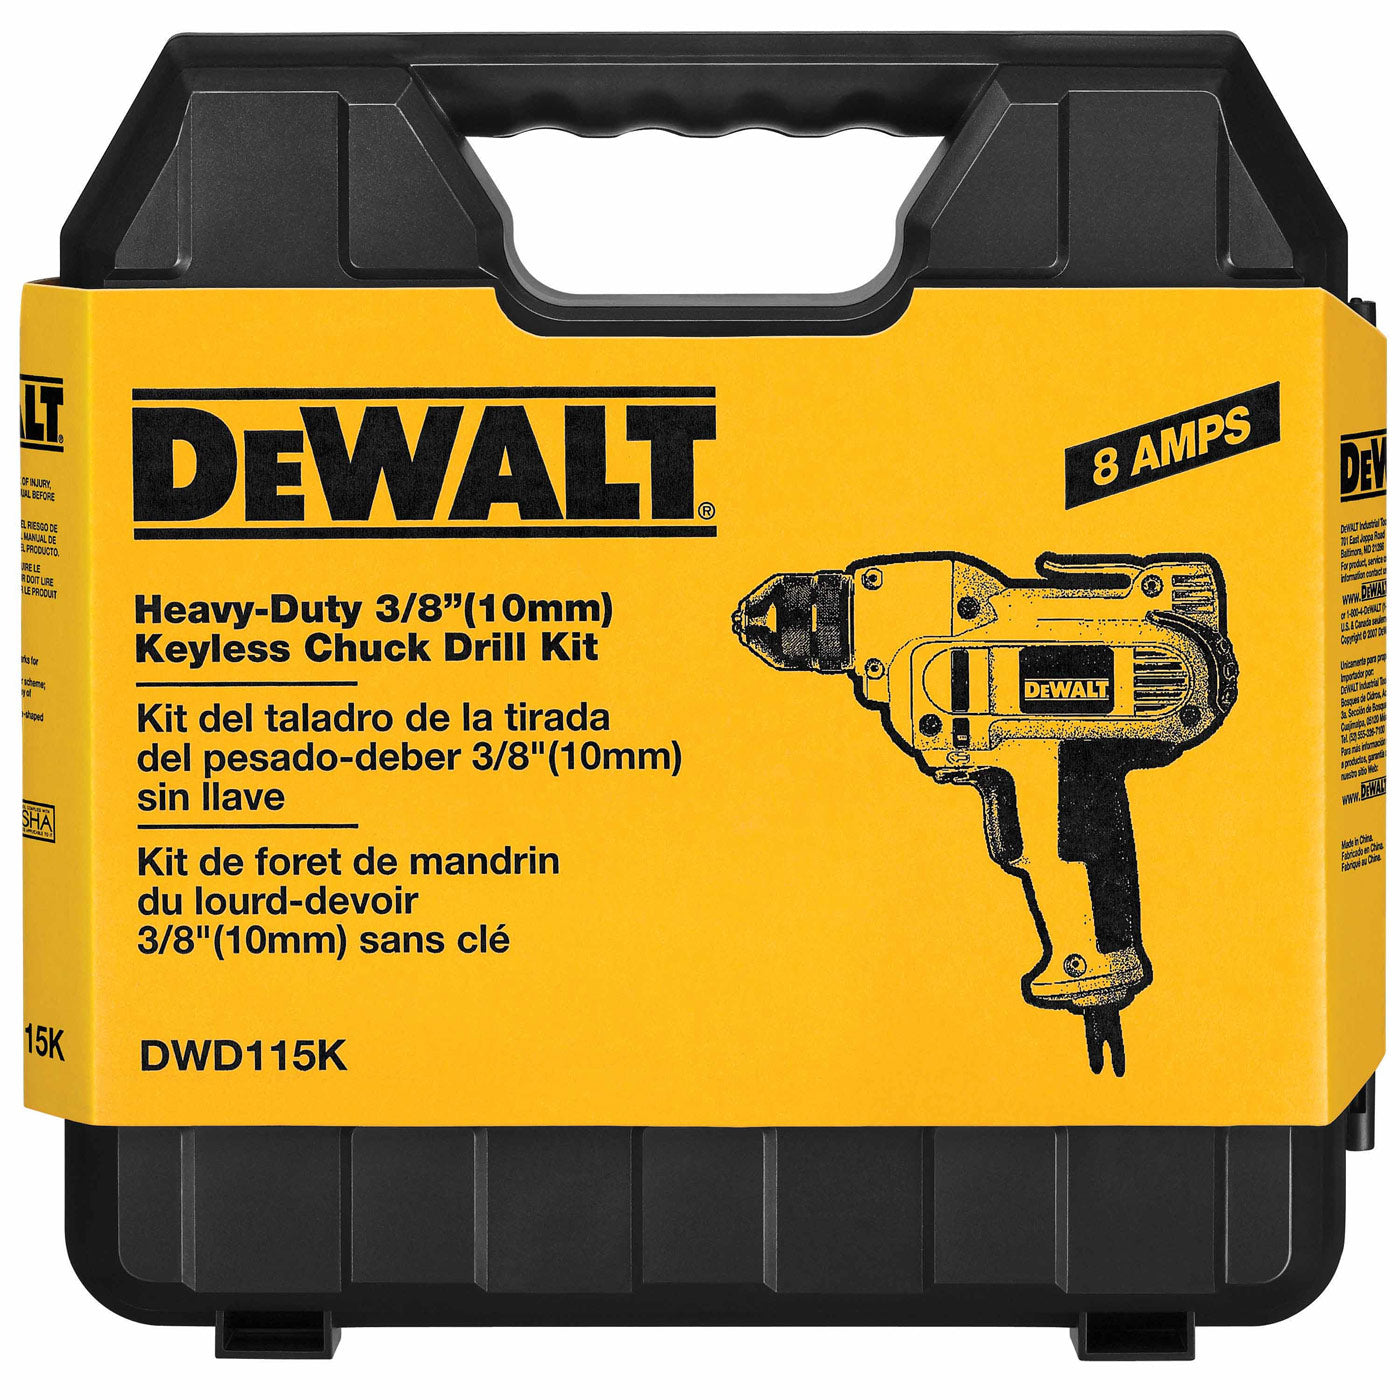 DeWalt DWD115K Heavy-Duty 3/8" VSR Mid-handle Drill Kit w/ Keyless Chuck